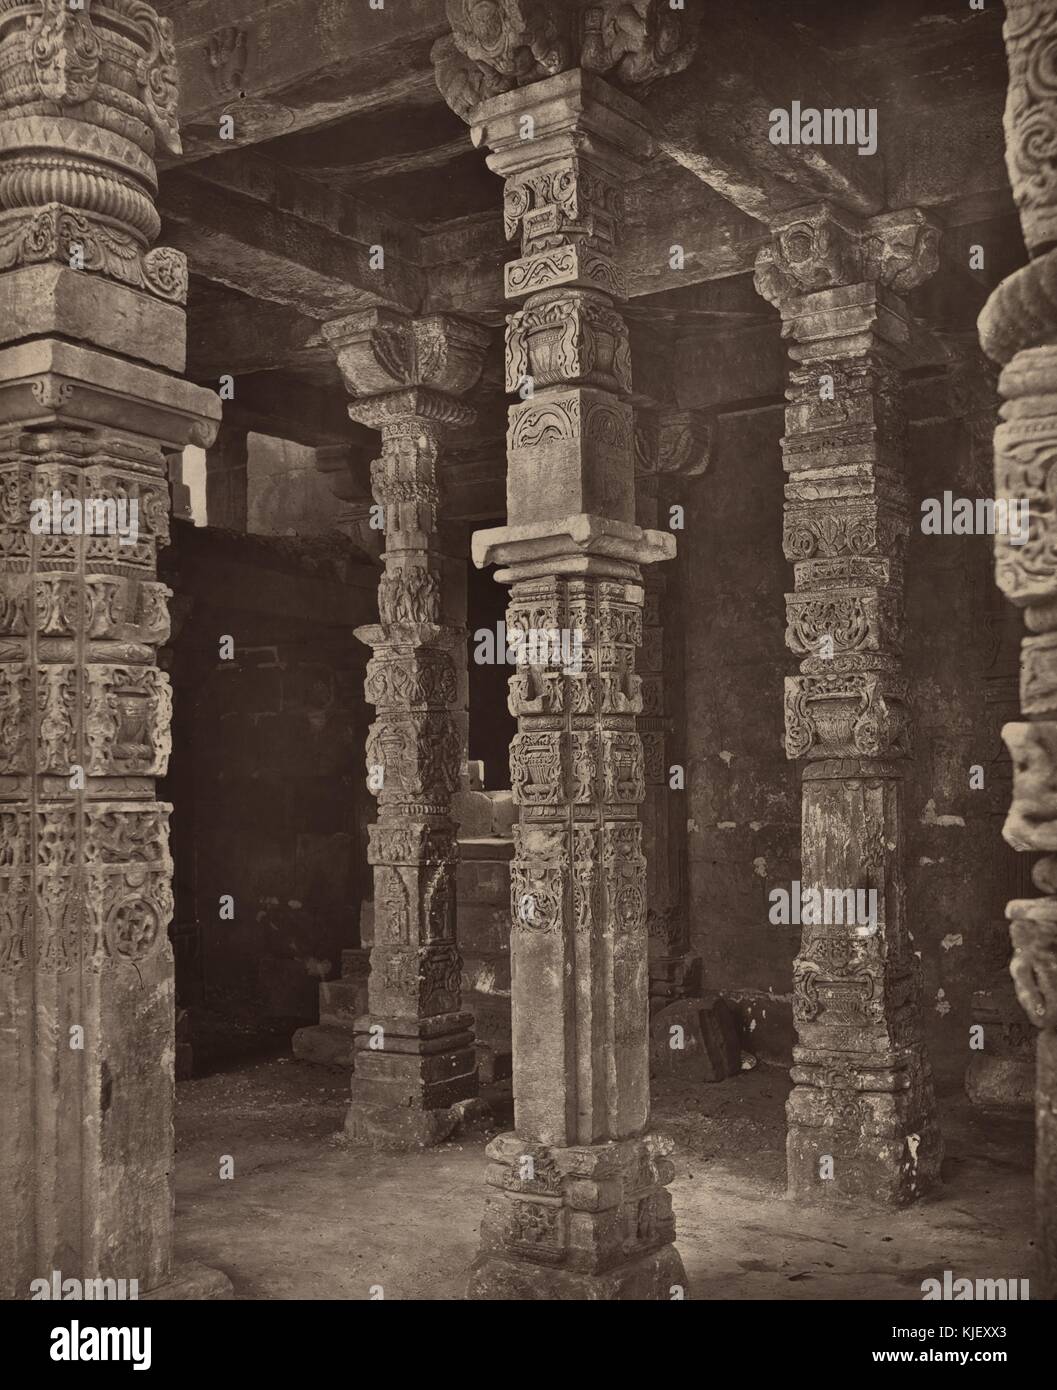 Une photographie d'un vieux piliers debout dans le complexe de Qutb, le complexe se compose de monuments et édifices construits par de nombreuses règles sur plusieurs centaines d'années, le site est désigné comme site du patrimoine mondial de l'uniseco, Delhi, Inde, 1872. à partir de la bibliothèque publique de new york. Banque D'Images